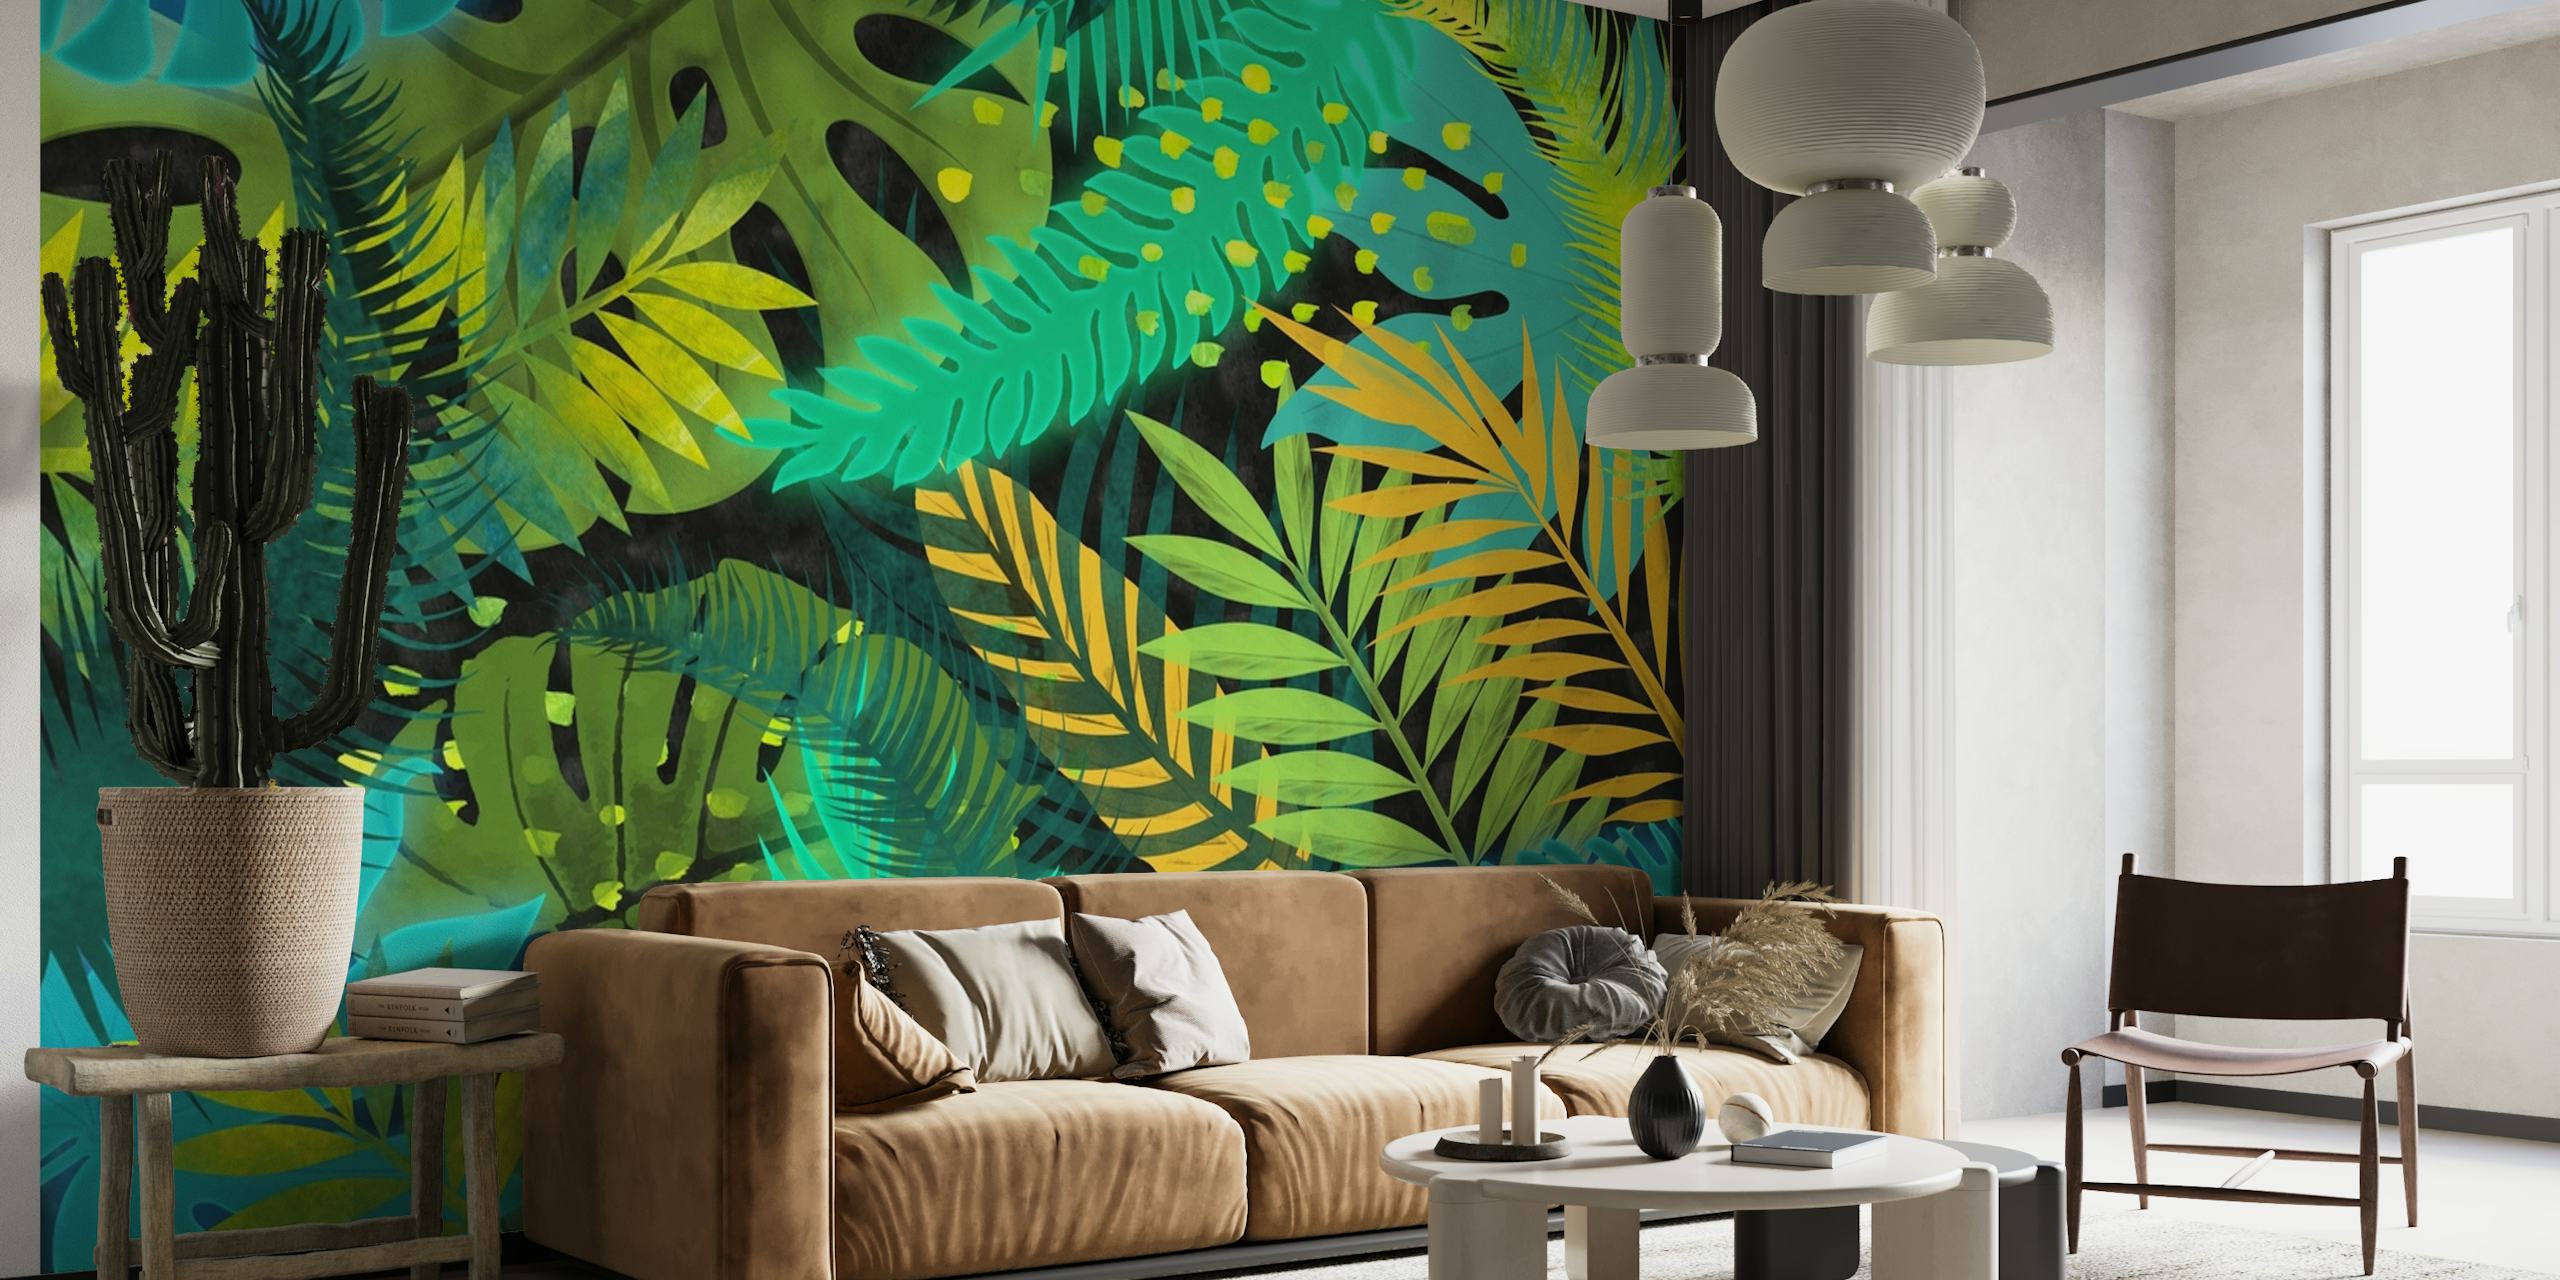 Zidna slika s tropskim lišćem s plavim, zelenim i žutim lišćem za unutarnje uređenje